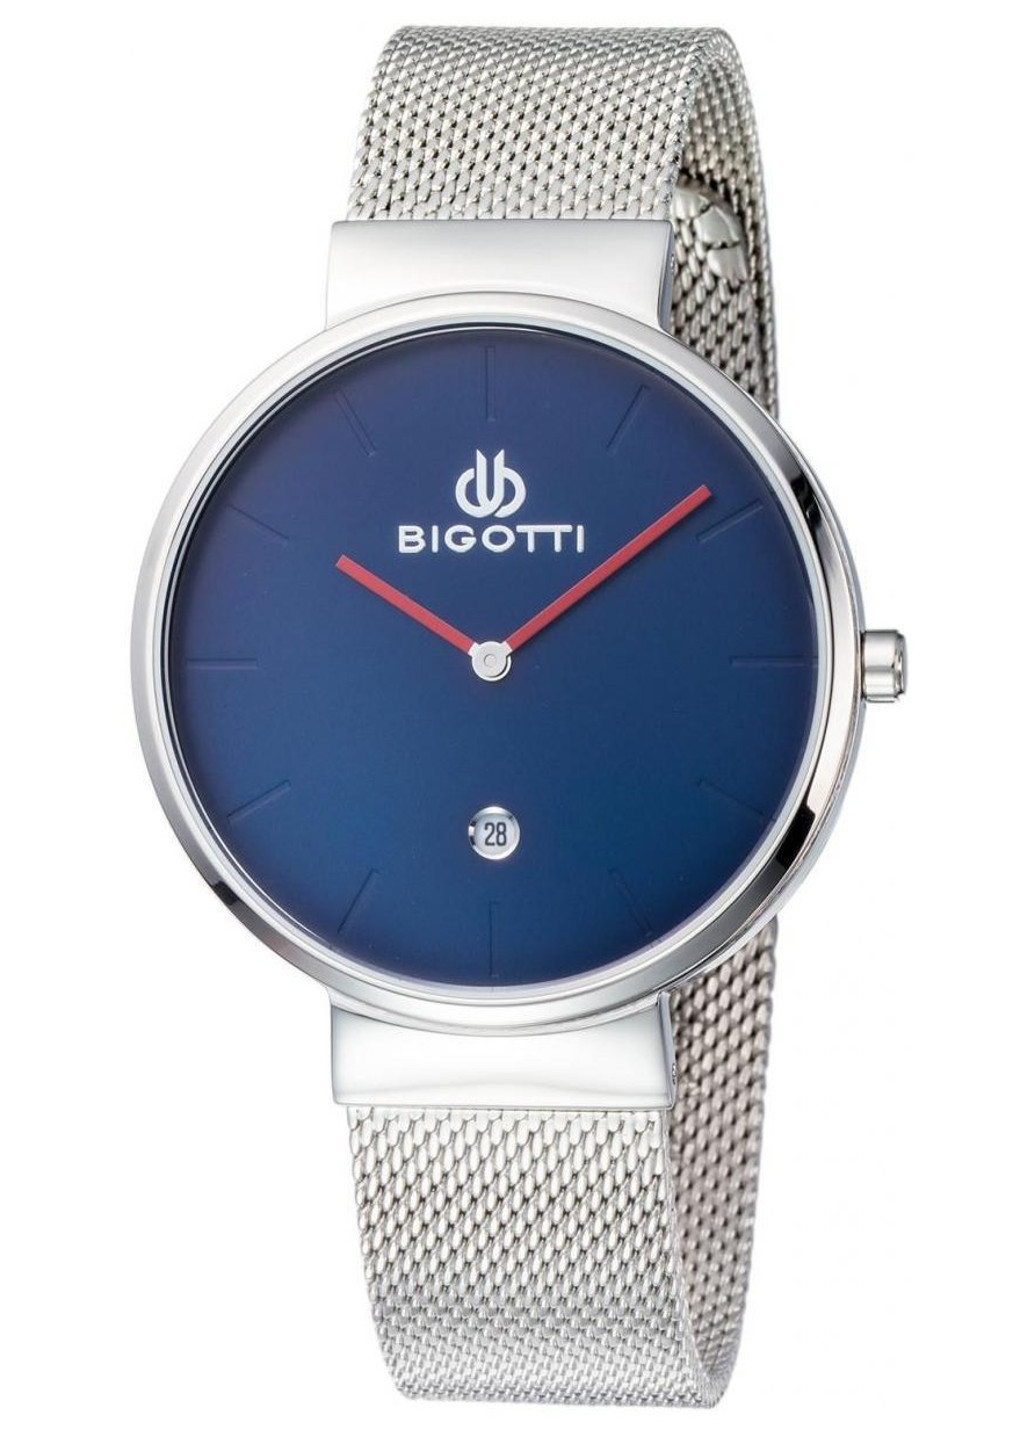 BGT0180-3 Bigotti (251250139)